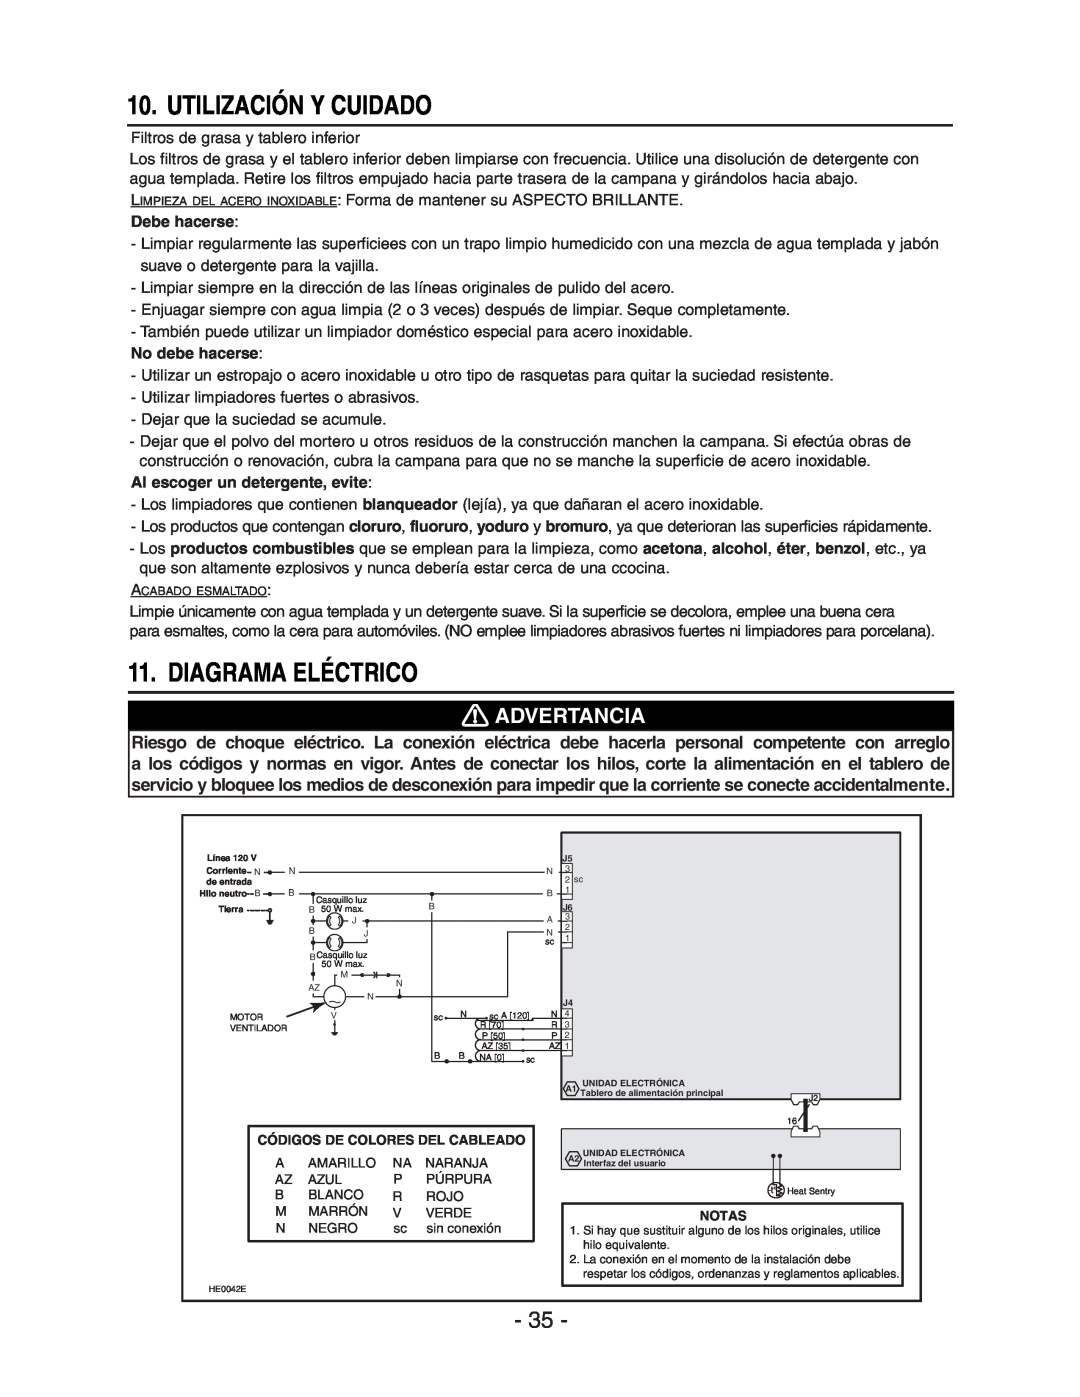 Broan E661 manual Utilización Y Cuidado, Diagrama Eléctrico, Advertancia, Debe hacerse, No debe hacerse 